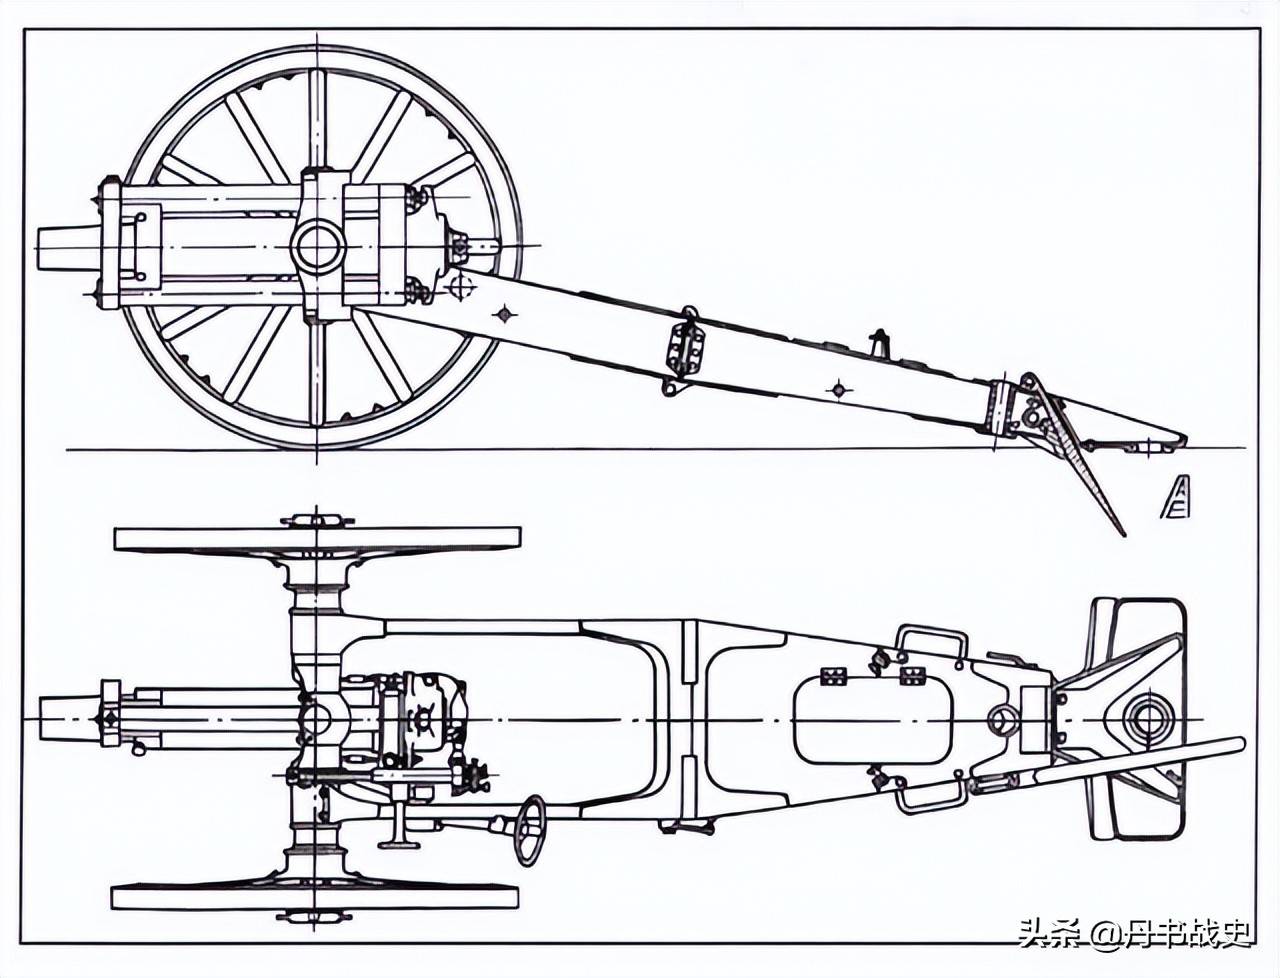 原创这款小炮与鬼子的92式步兵炮相比如何俄国m190476毫米山炮